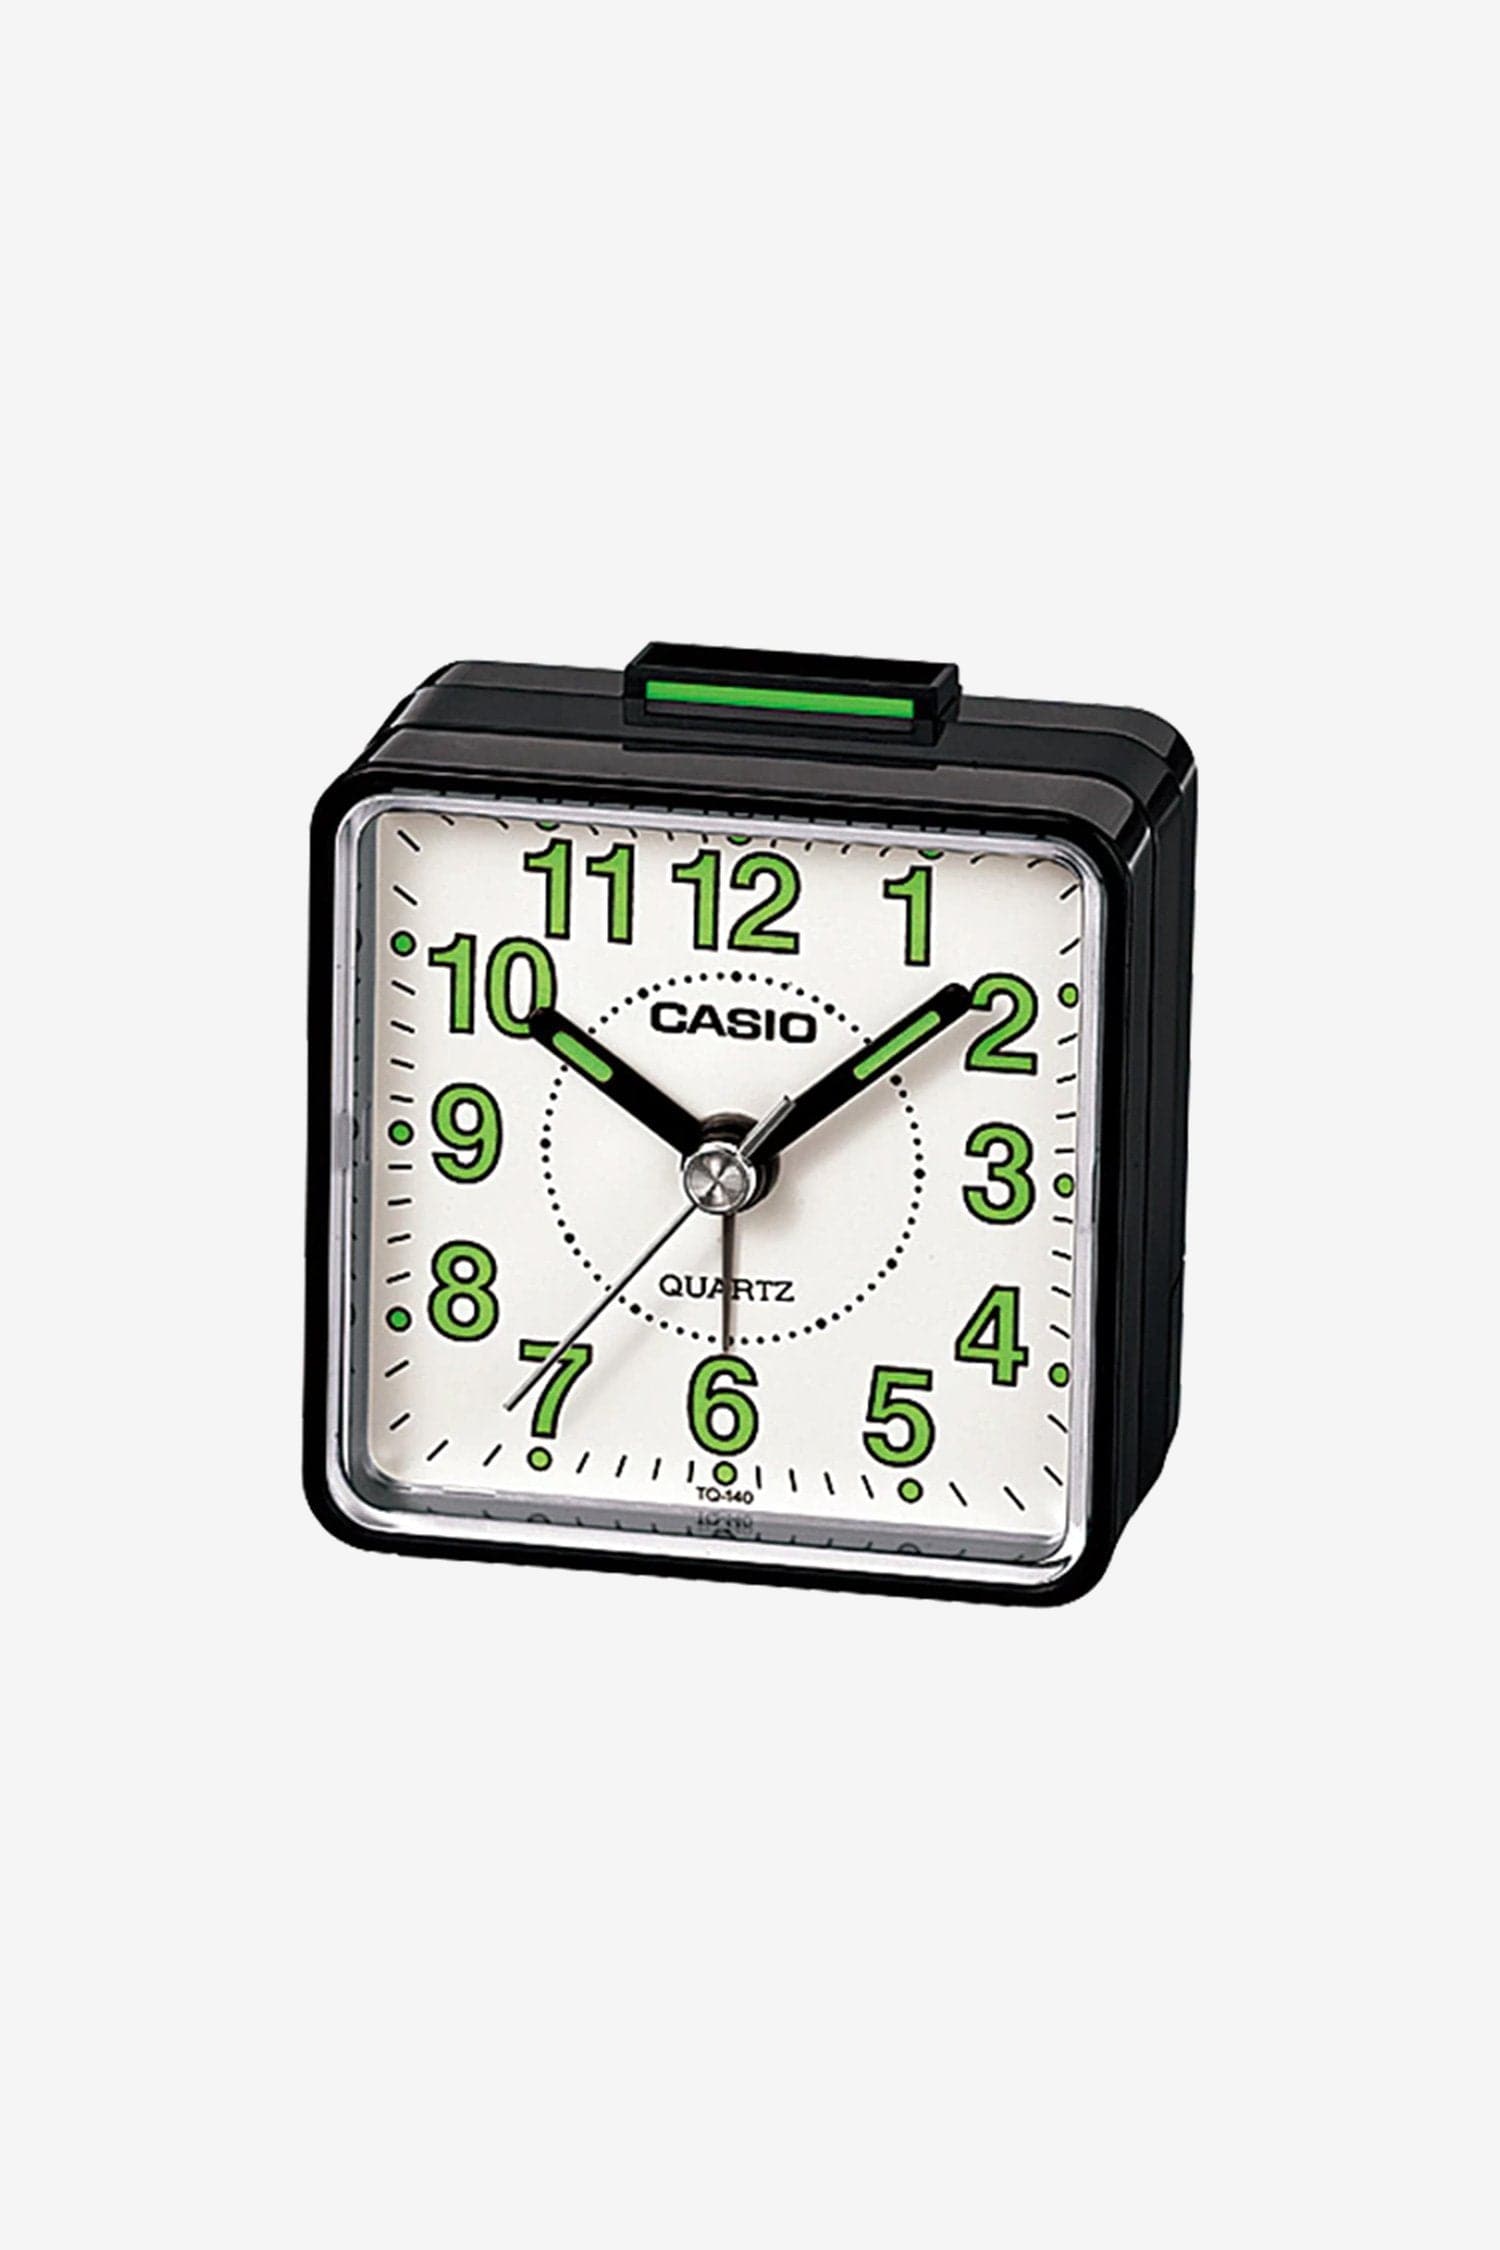 Reloj Despertador Casio / Alarma ⏰⏰⏰⏰⏰ 